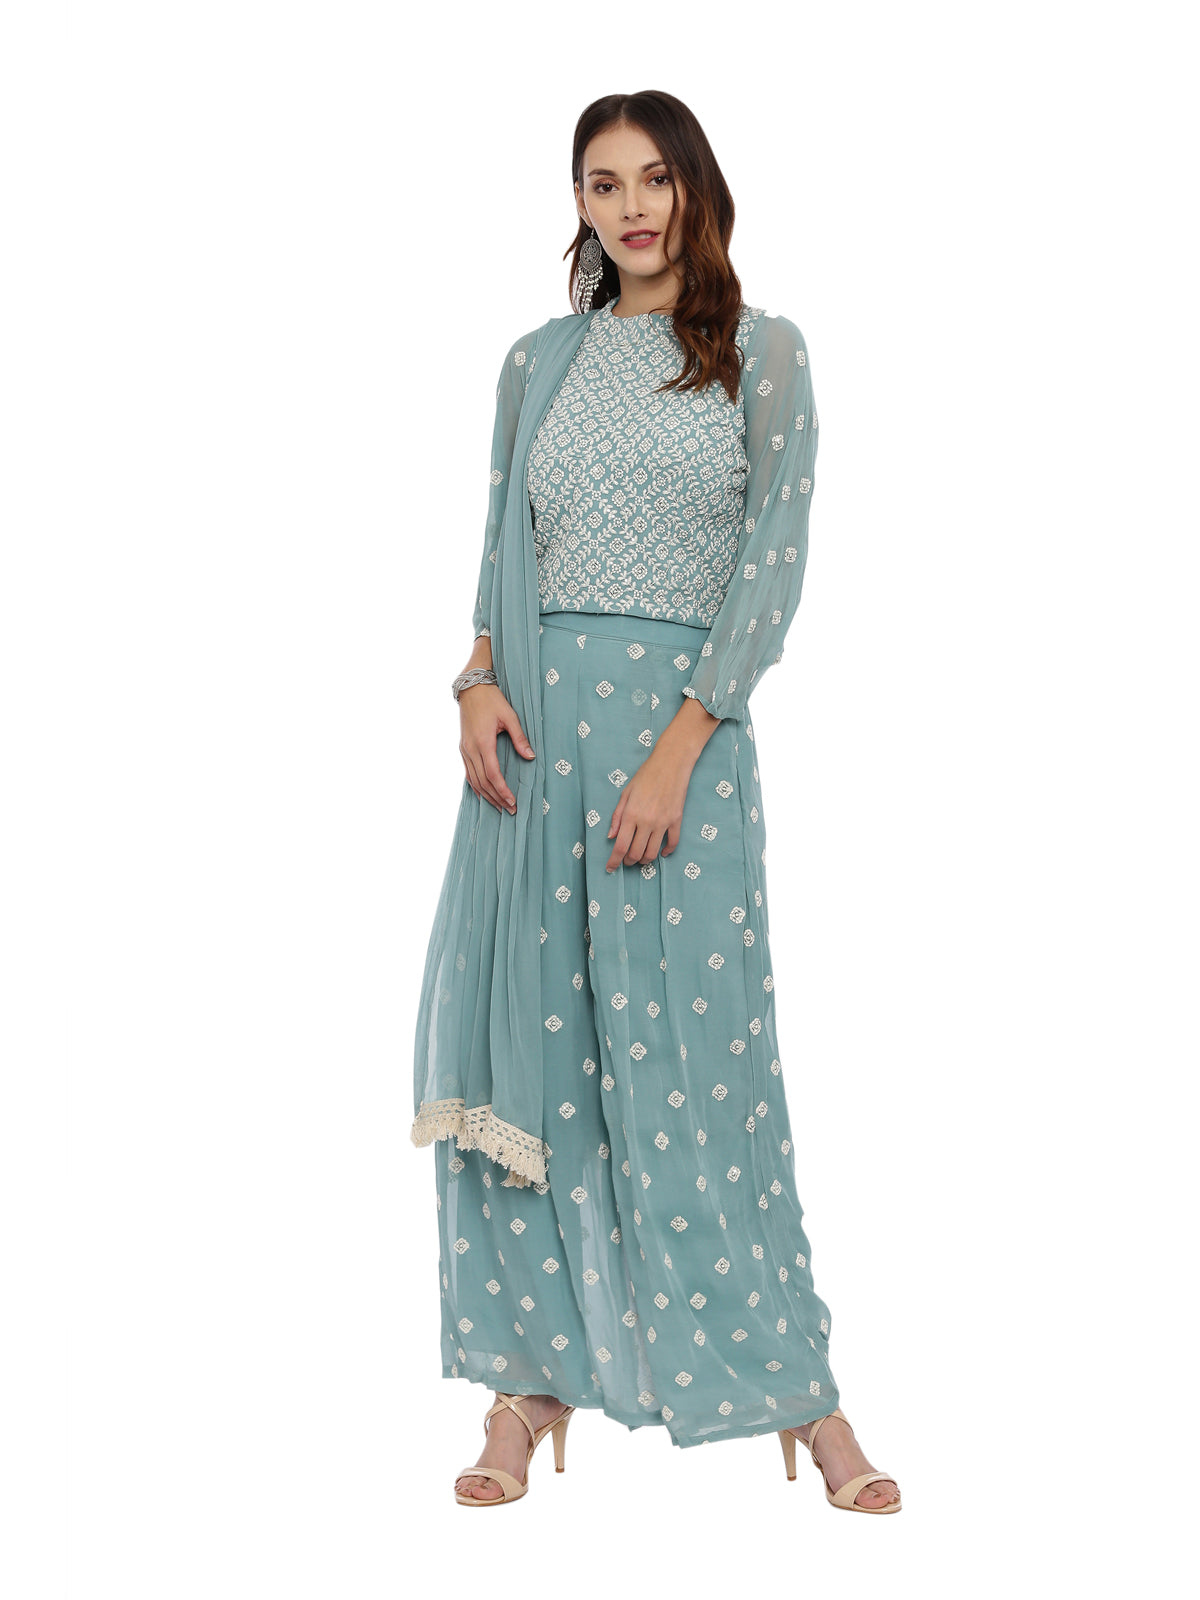 Neeru's Sea Green Color Georgette Fabric Full Sleeves Suit-Plazzo